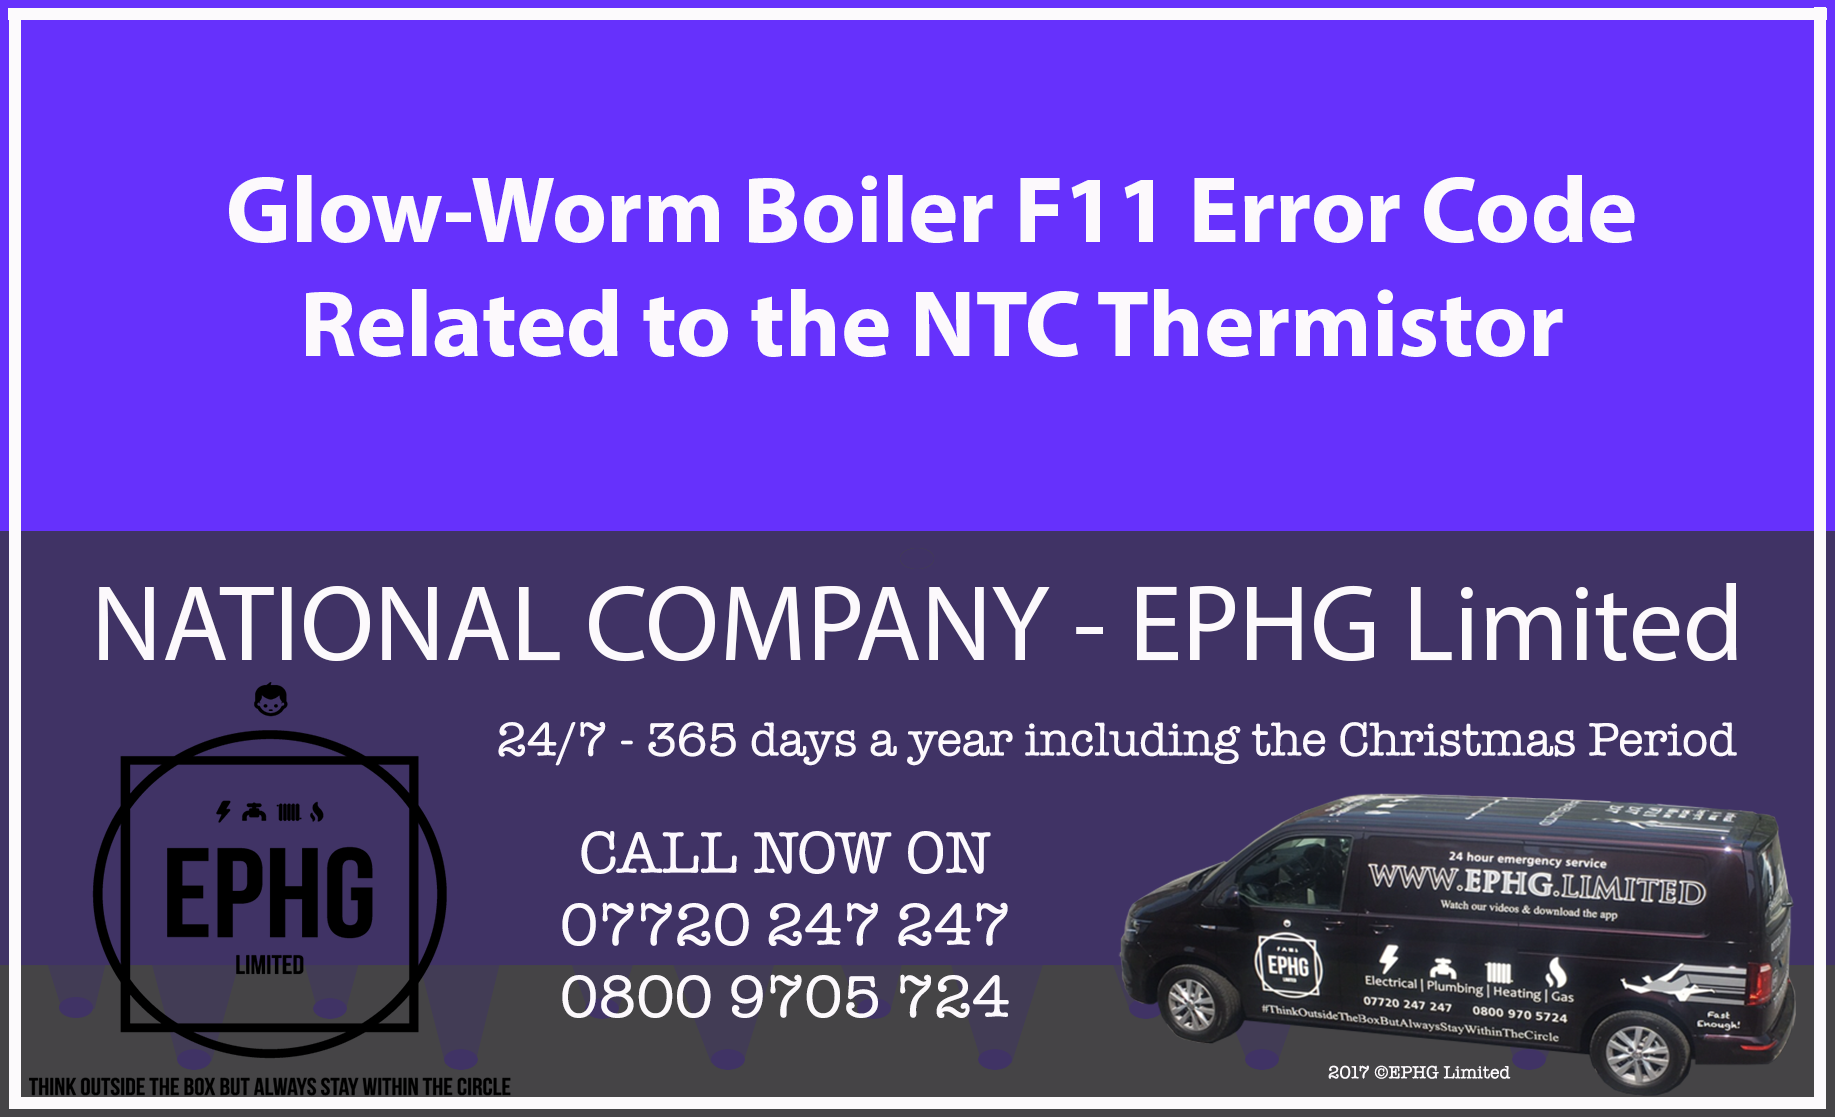 Glow-Worm boiler error code F11